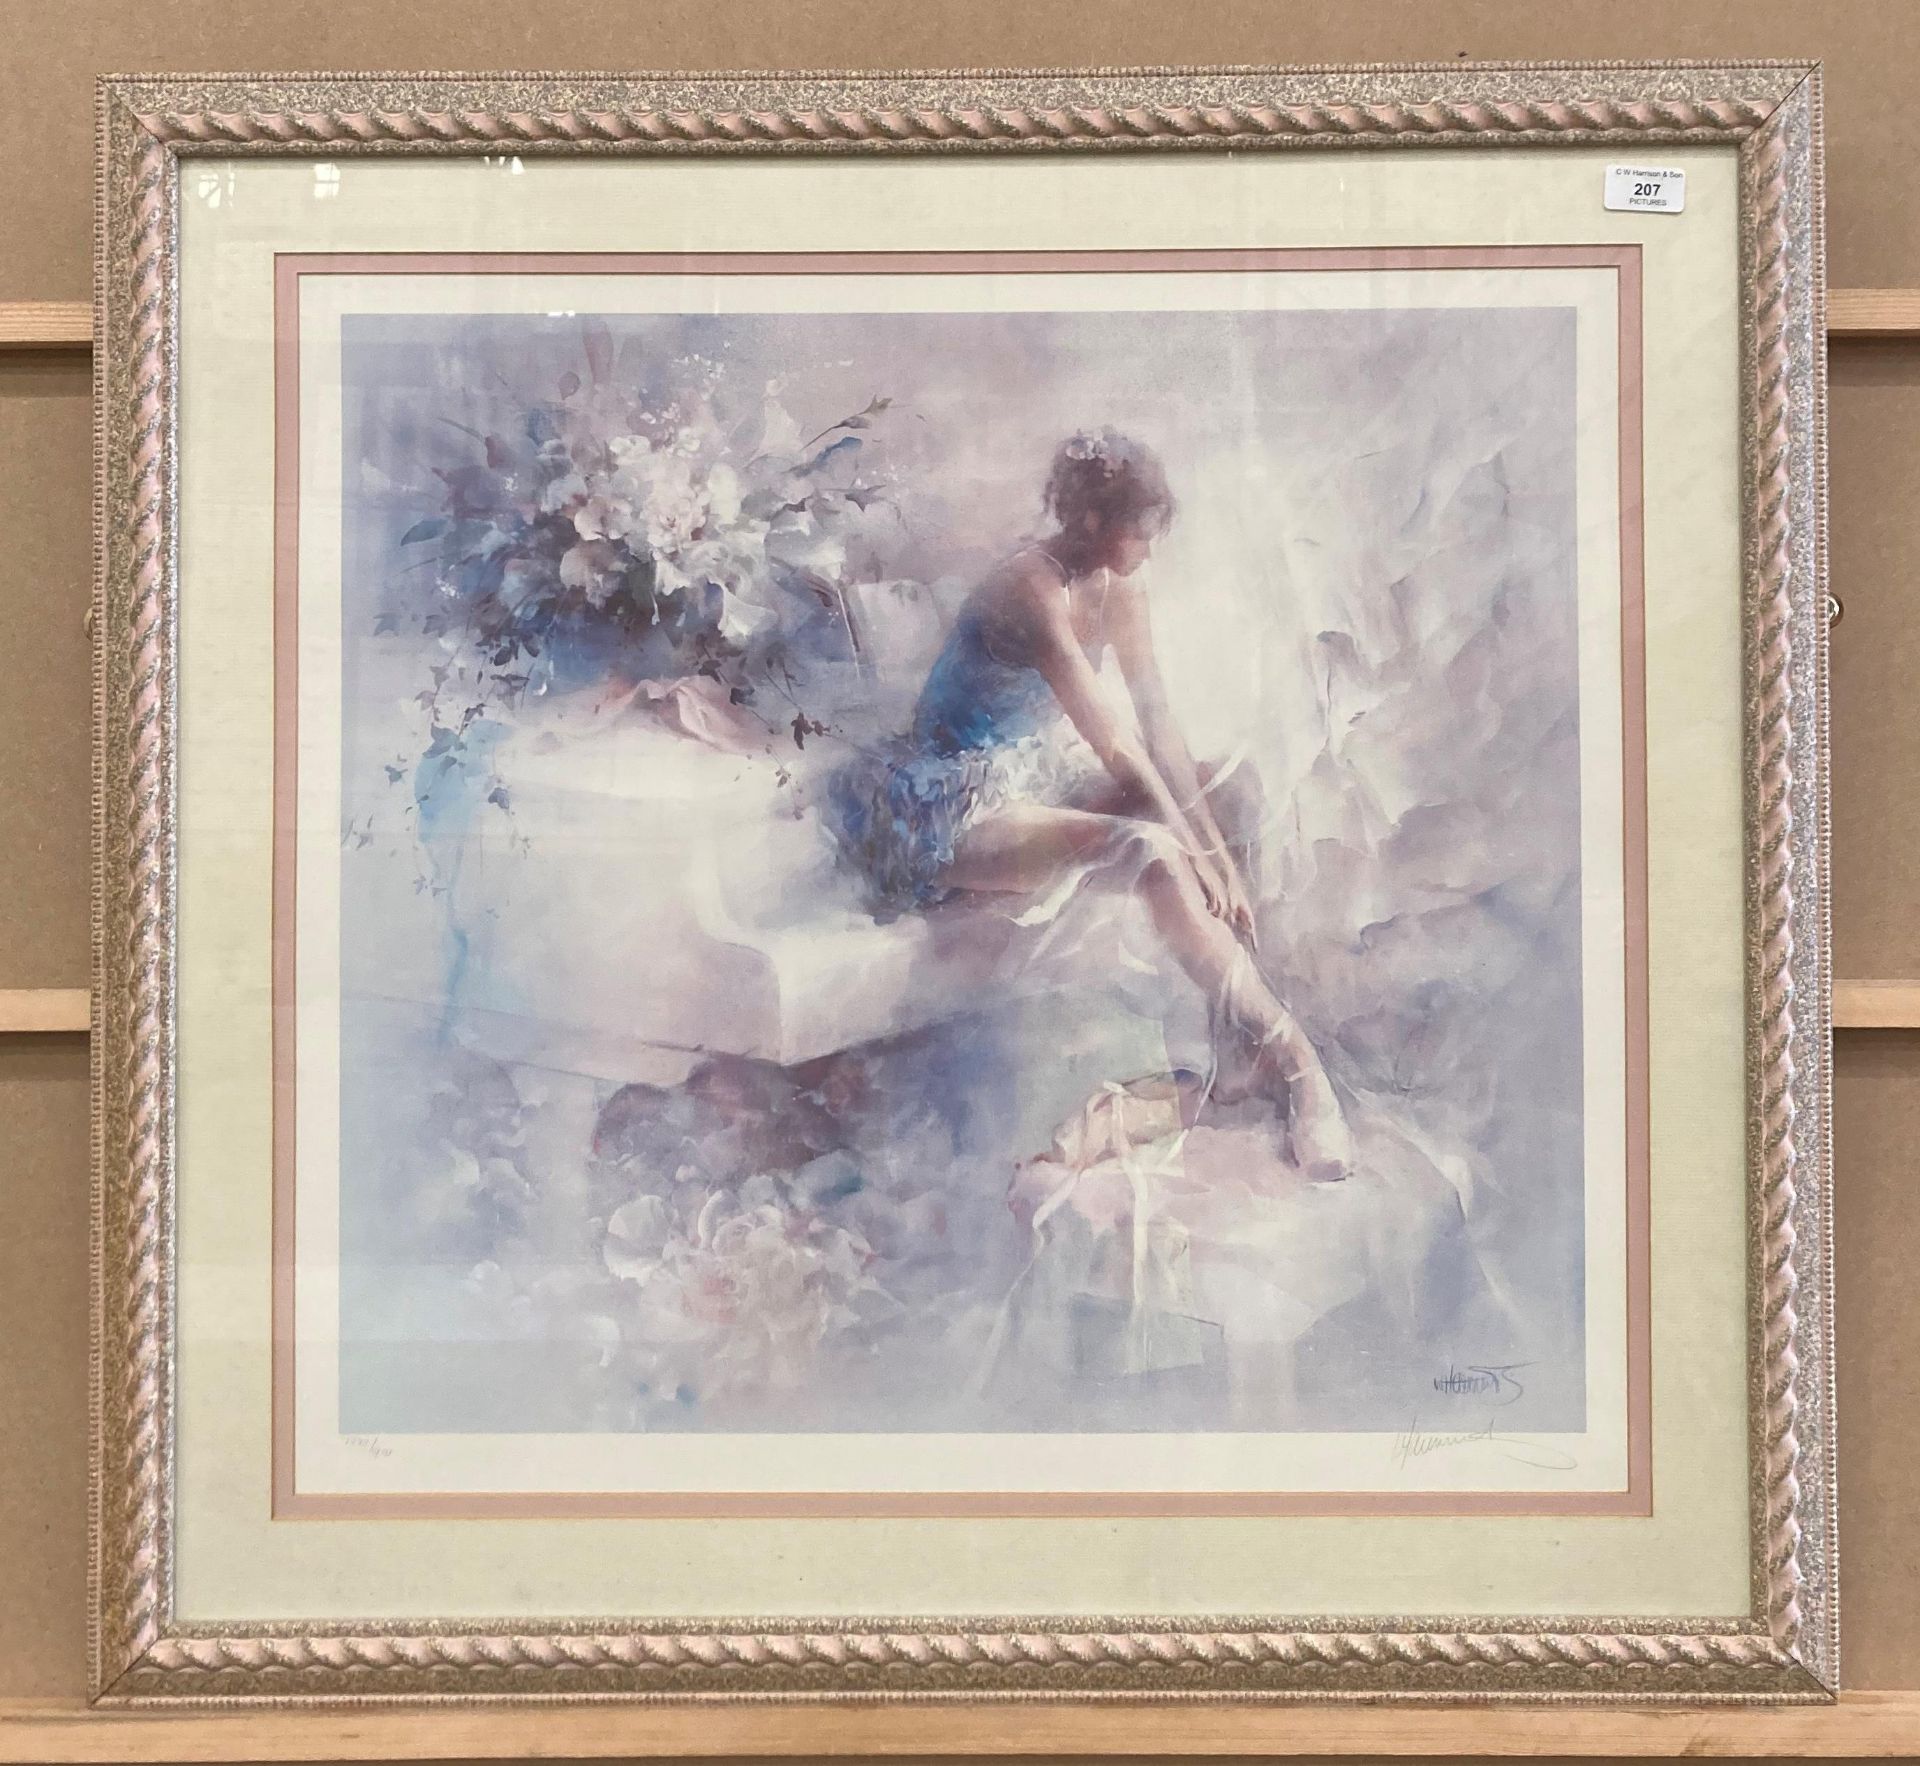 Willem Haenraets, framed limited edition print 'Ballerina', 80cm x 64cm, - Image 2 of 6